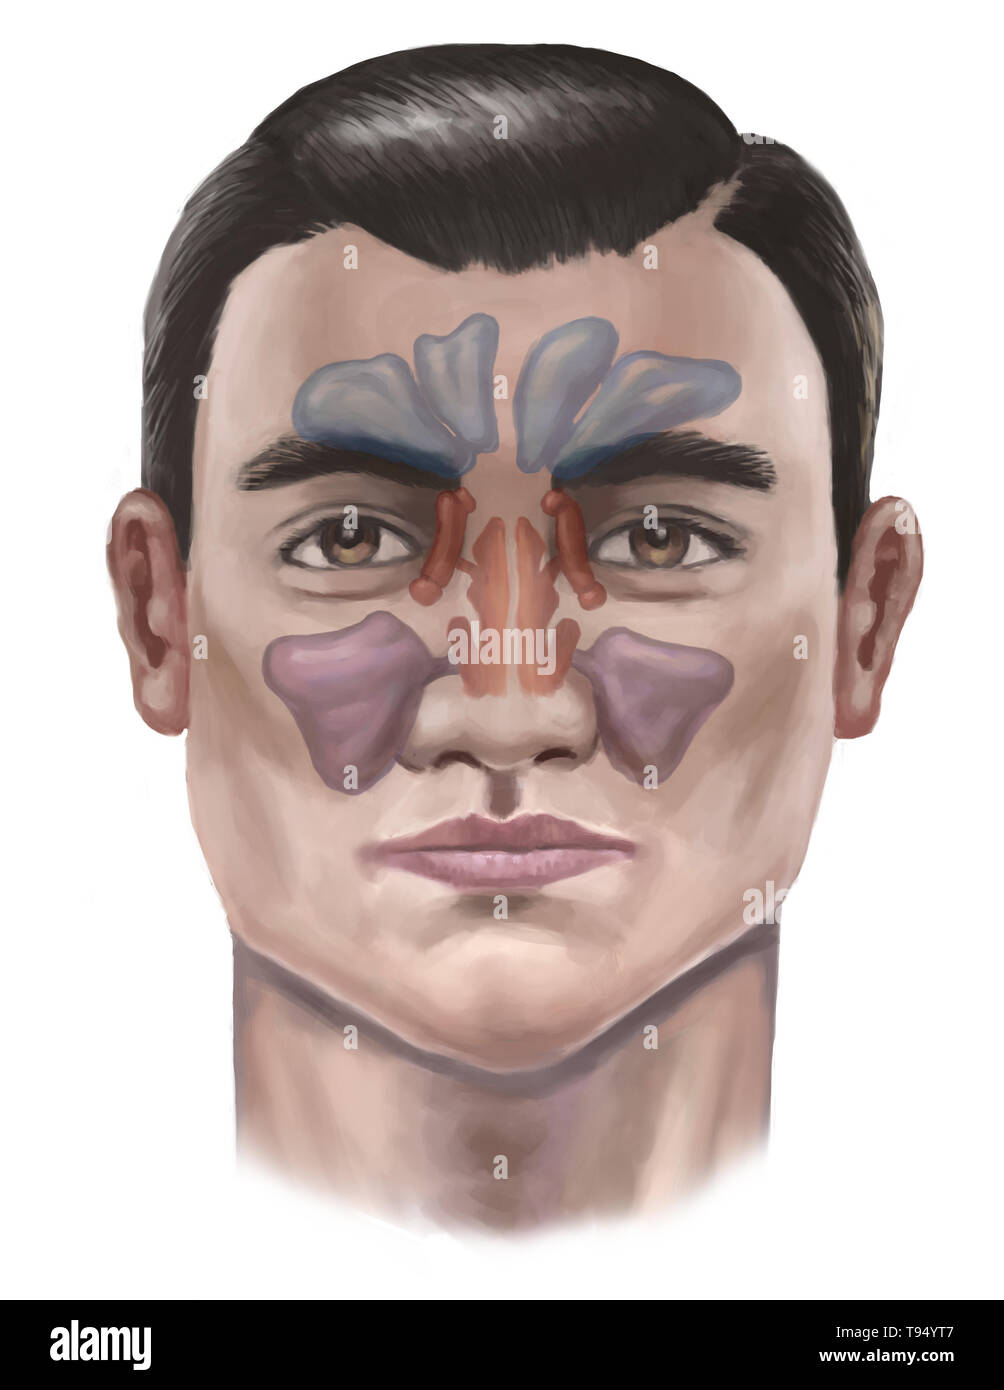 Illustrazione dei seni. Da cima a fondo, essi includono: seno frontale, il sphenoidal sinus, la sinusite etmoide sinusale e del seno mascellare. Foto Stock